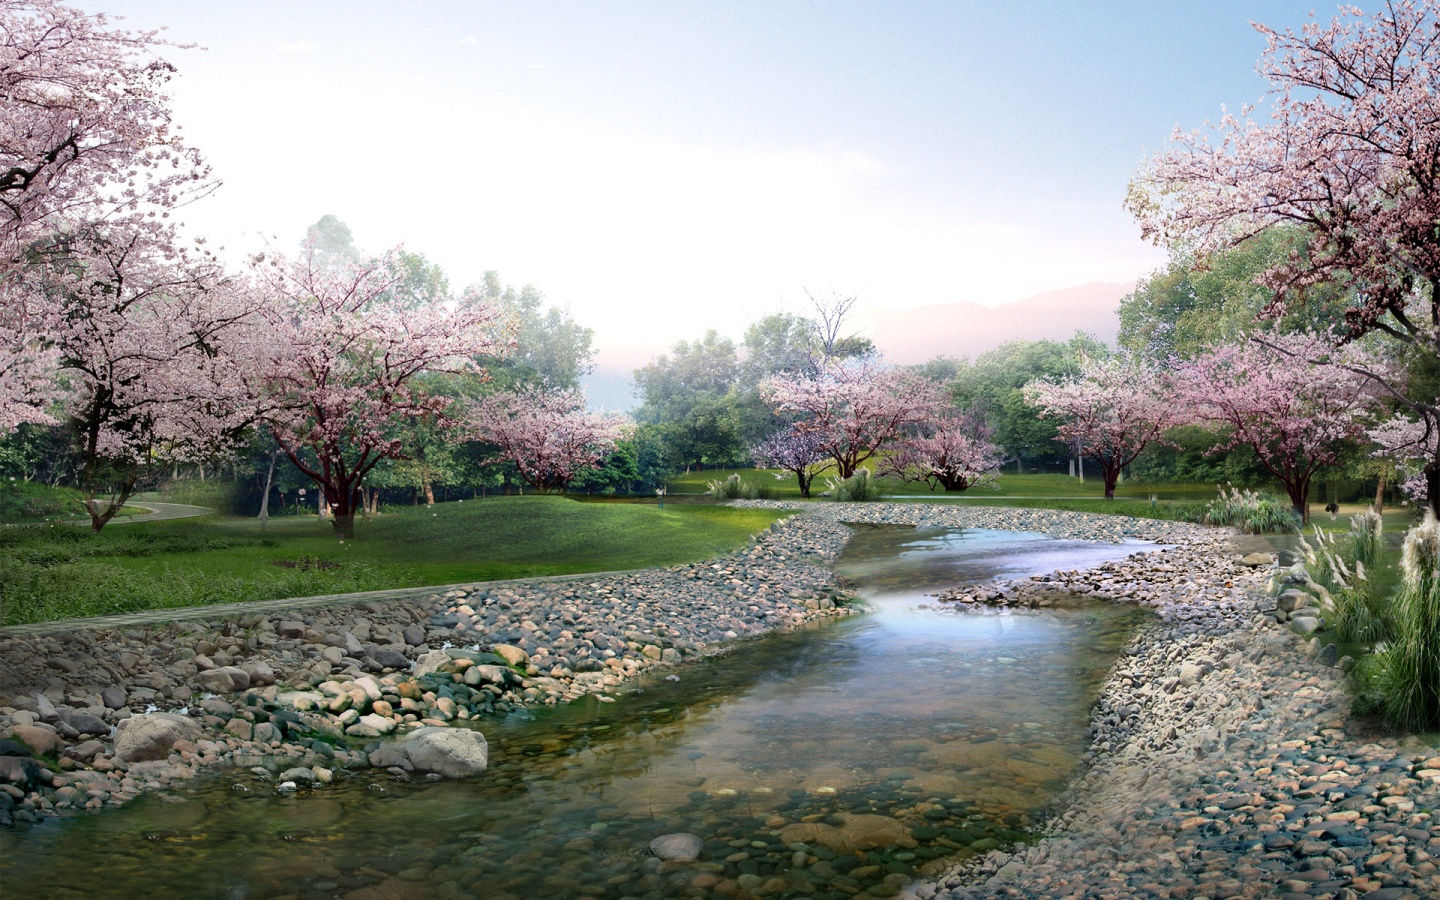 Fotografia e një lumi të vogël në pranverë